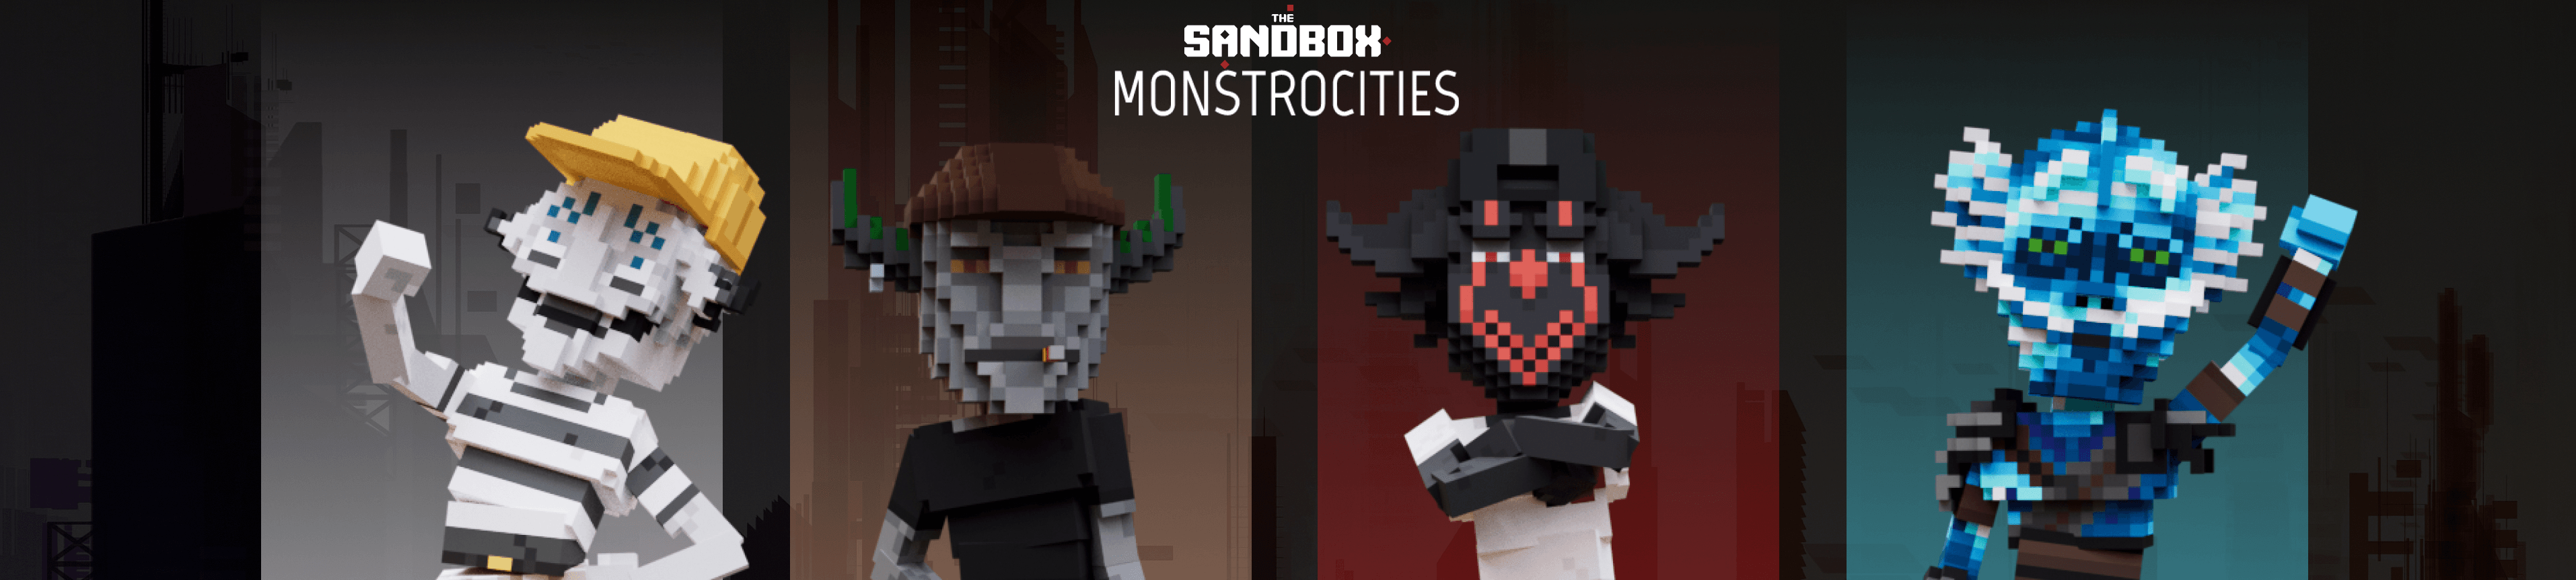 The MonstroCities